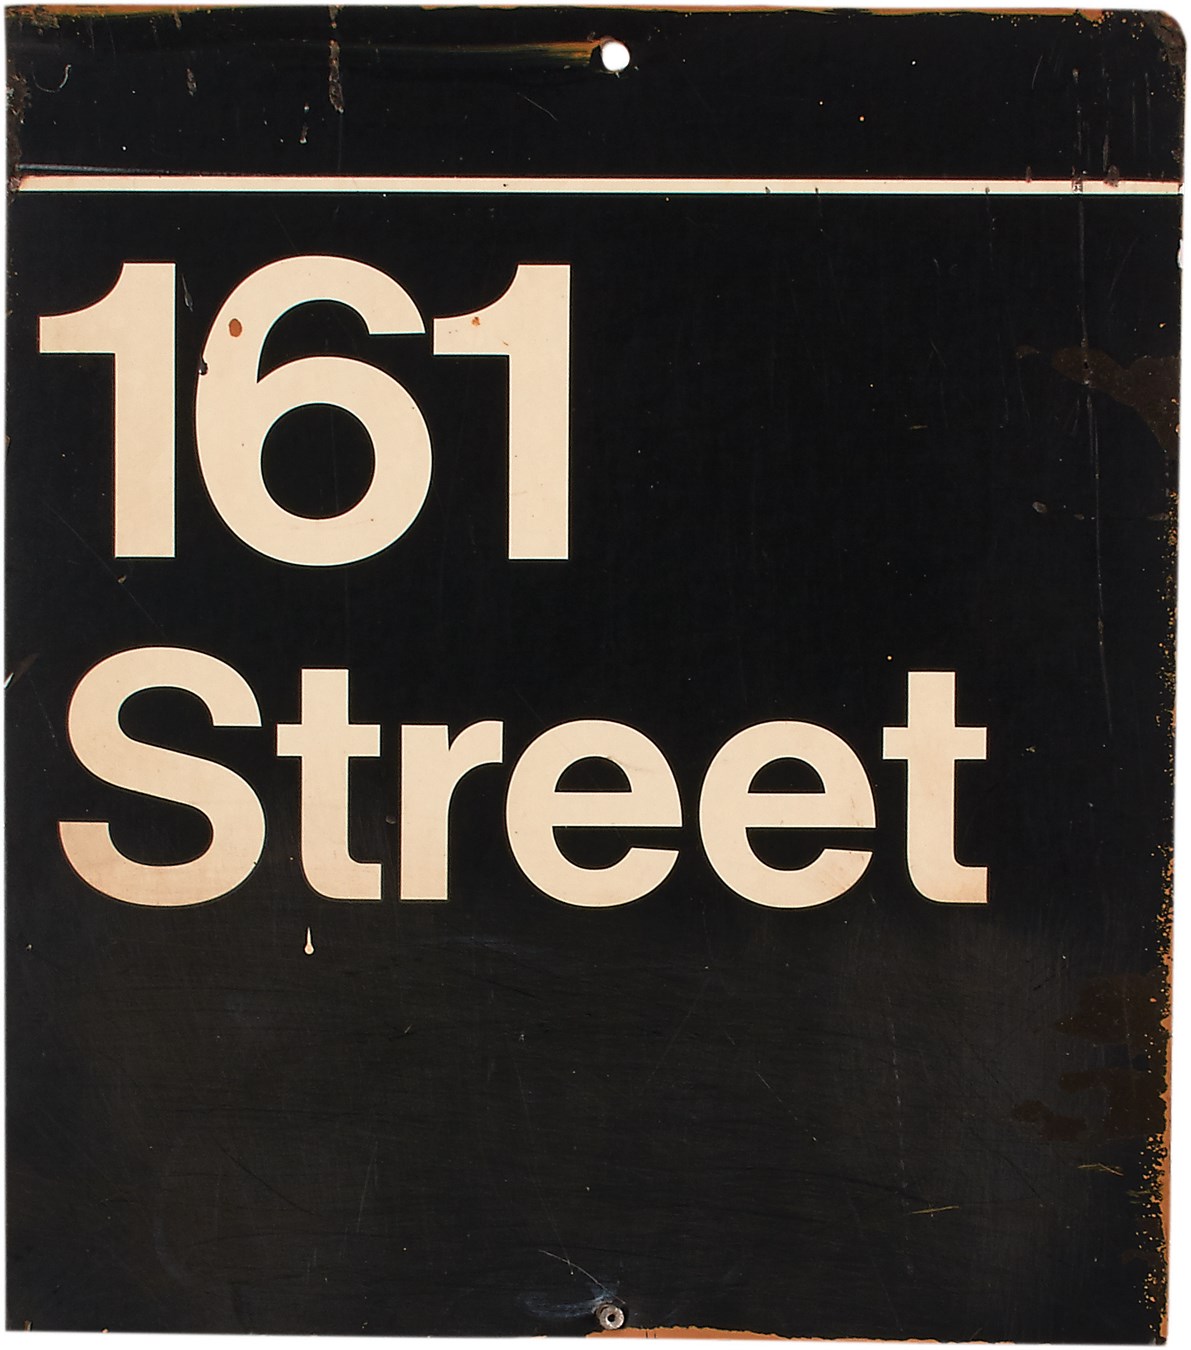 Circa 1977 Yankee Stadium 161st Street Subway Sign